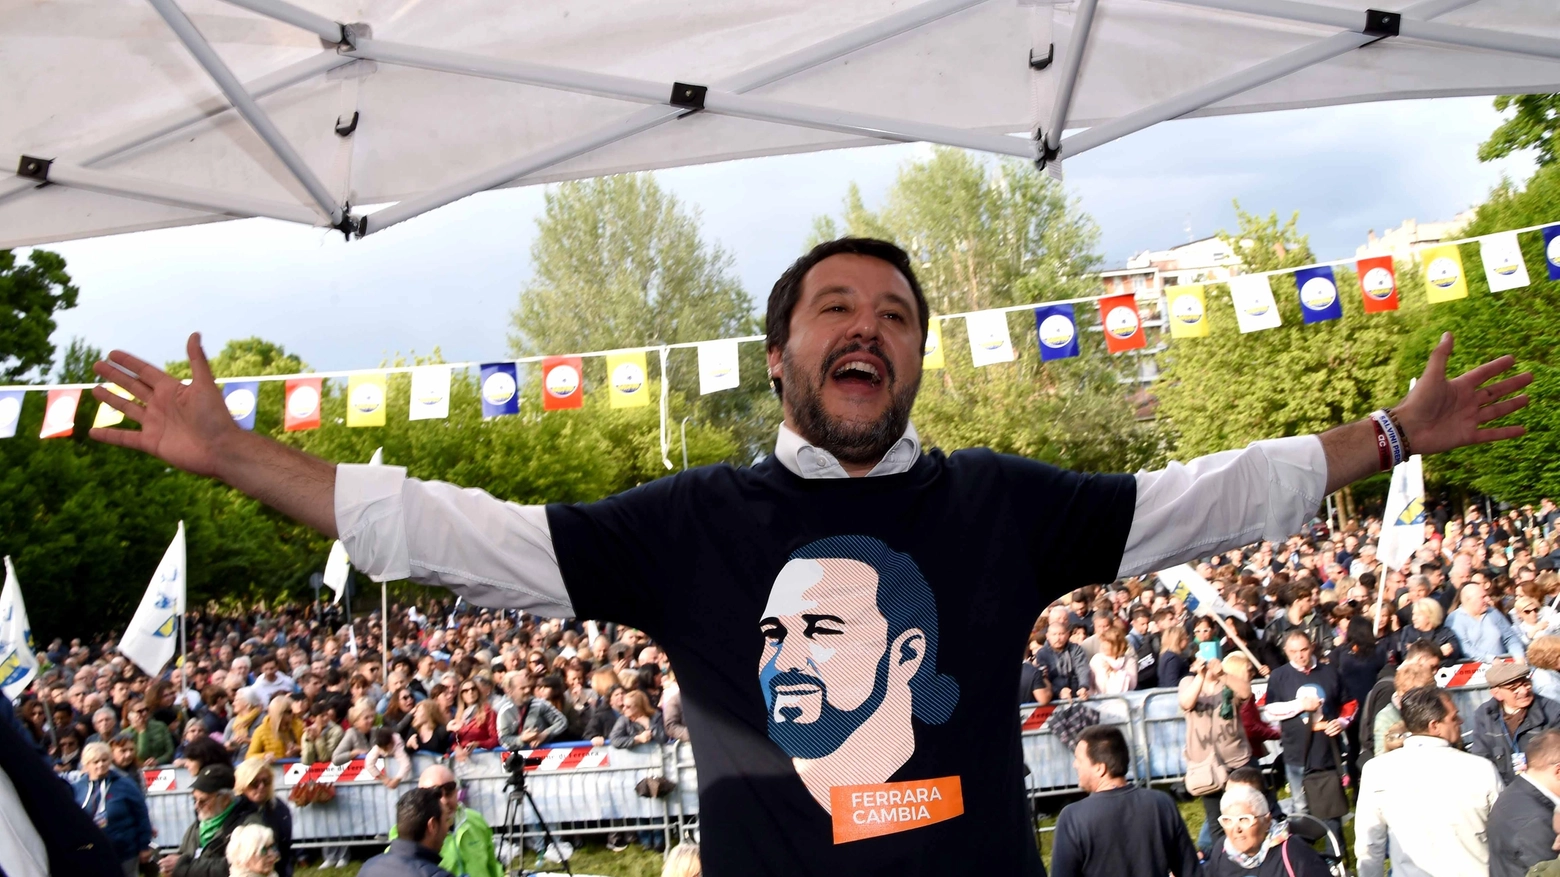 Matteo Salvini sul palco a Ferrara; la maglia ha il volto del candidato Fabbri